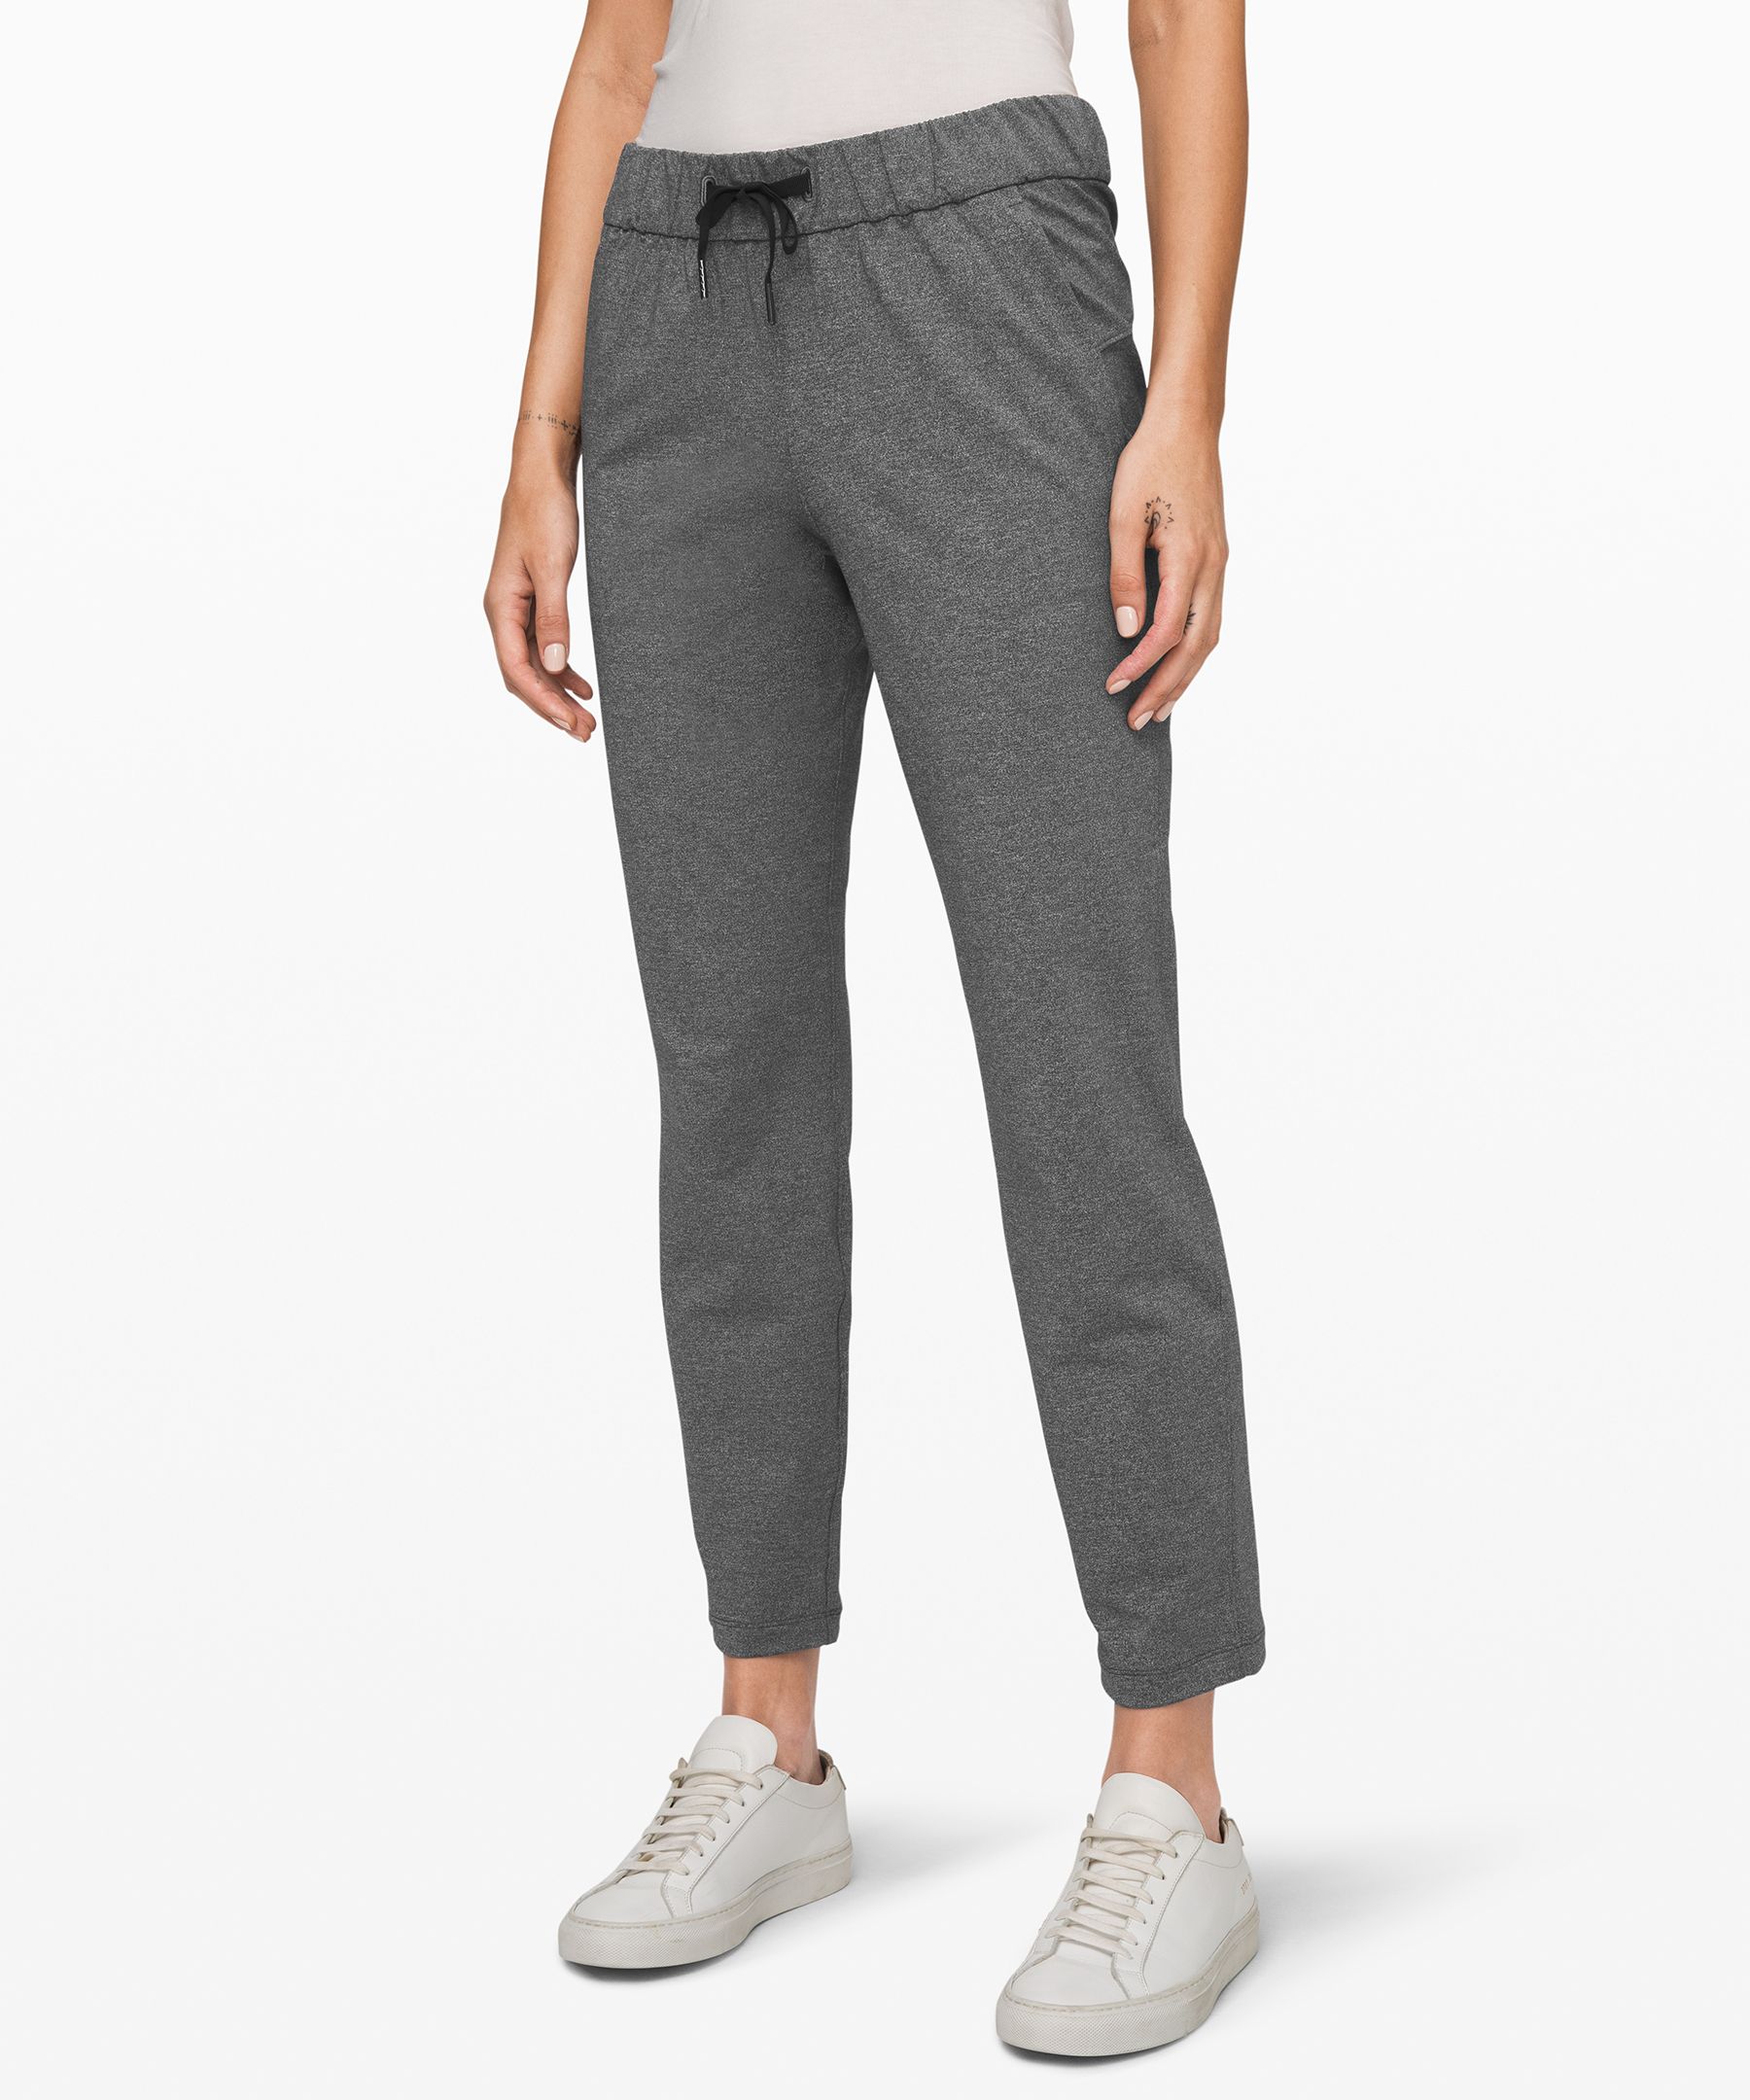 heather grey lululemon pants